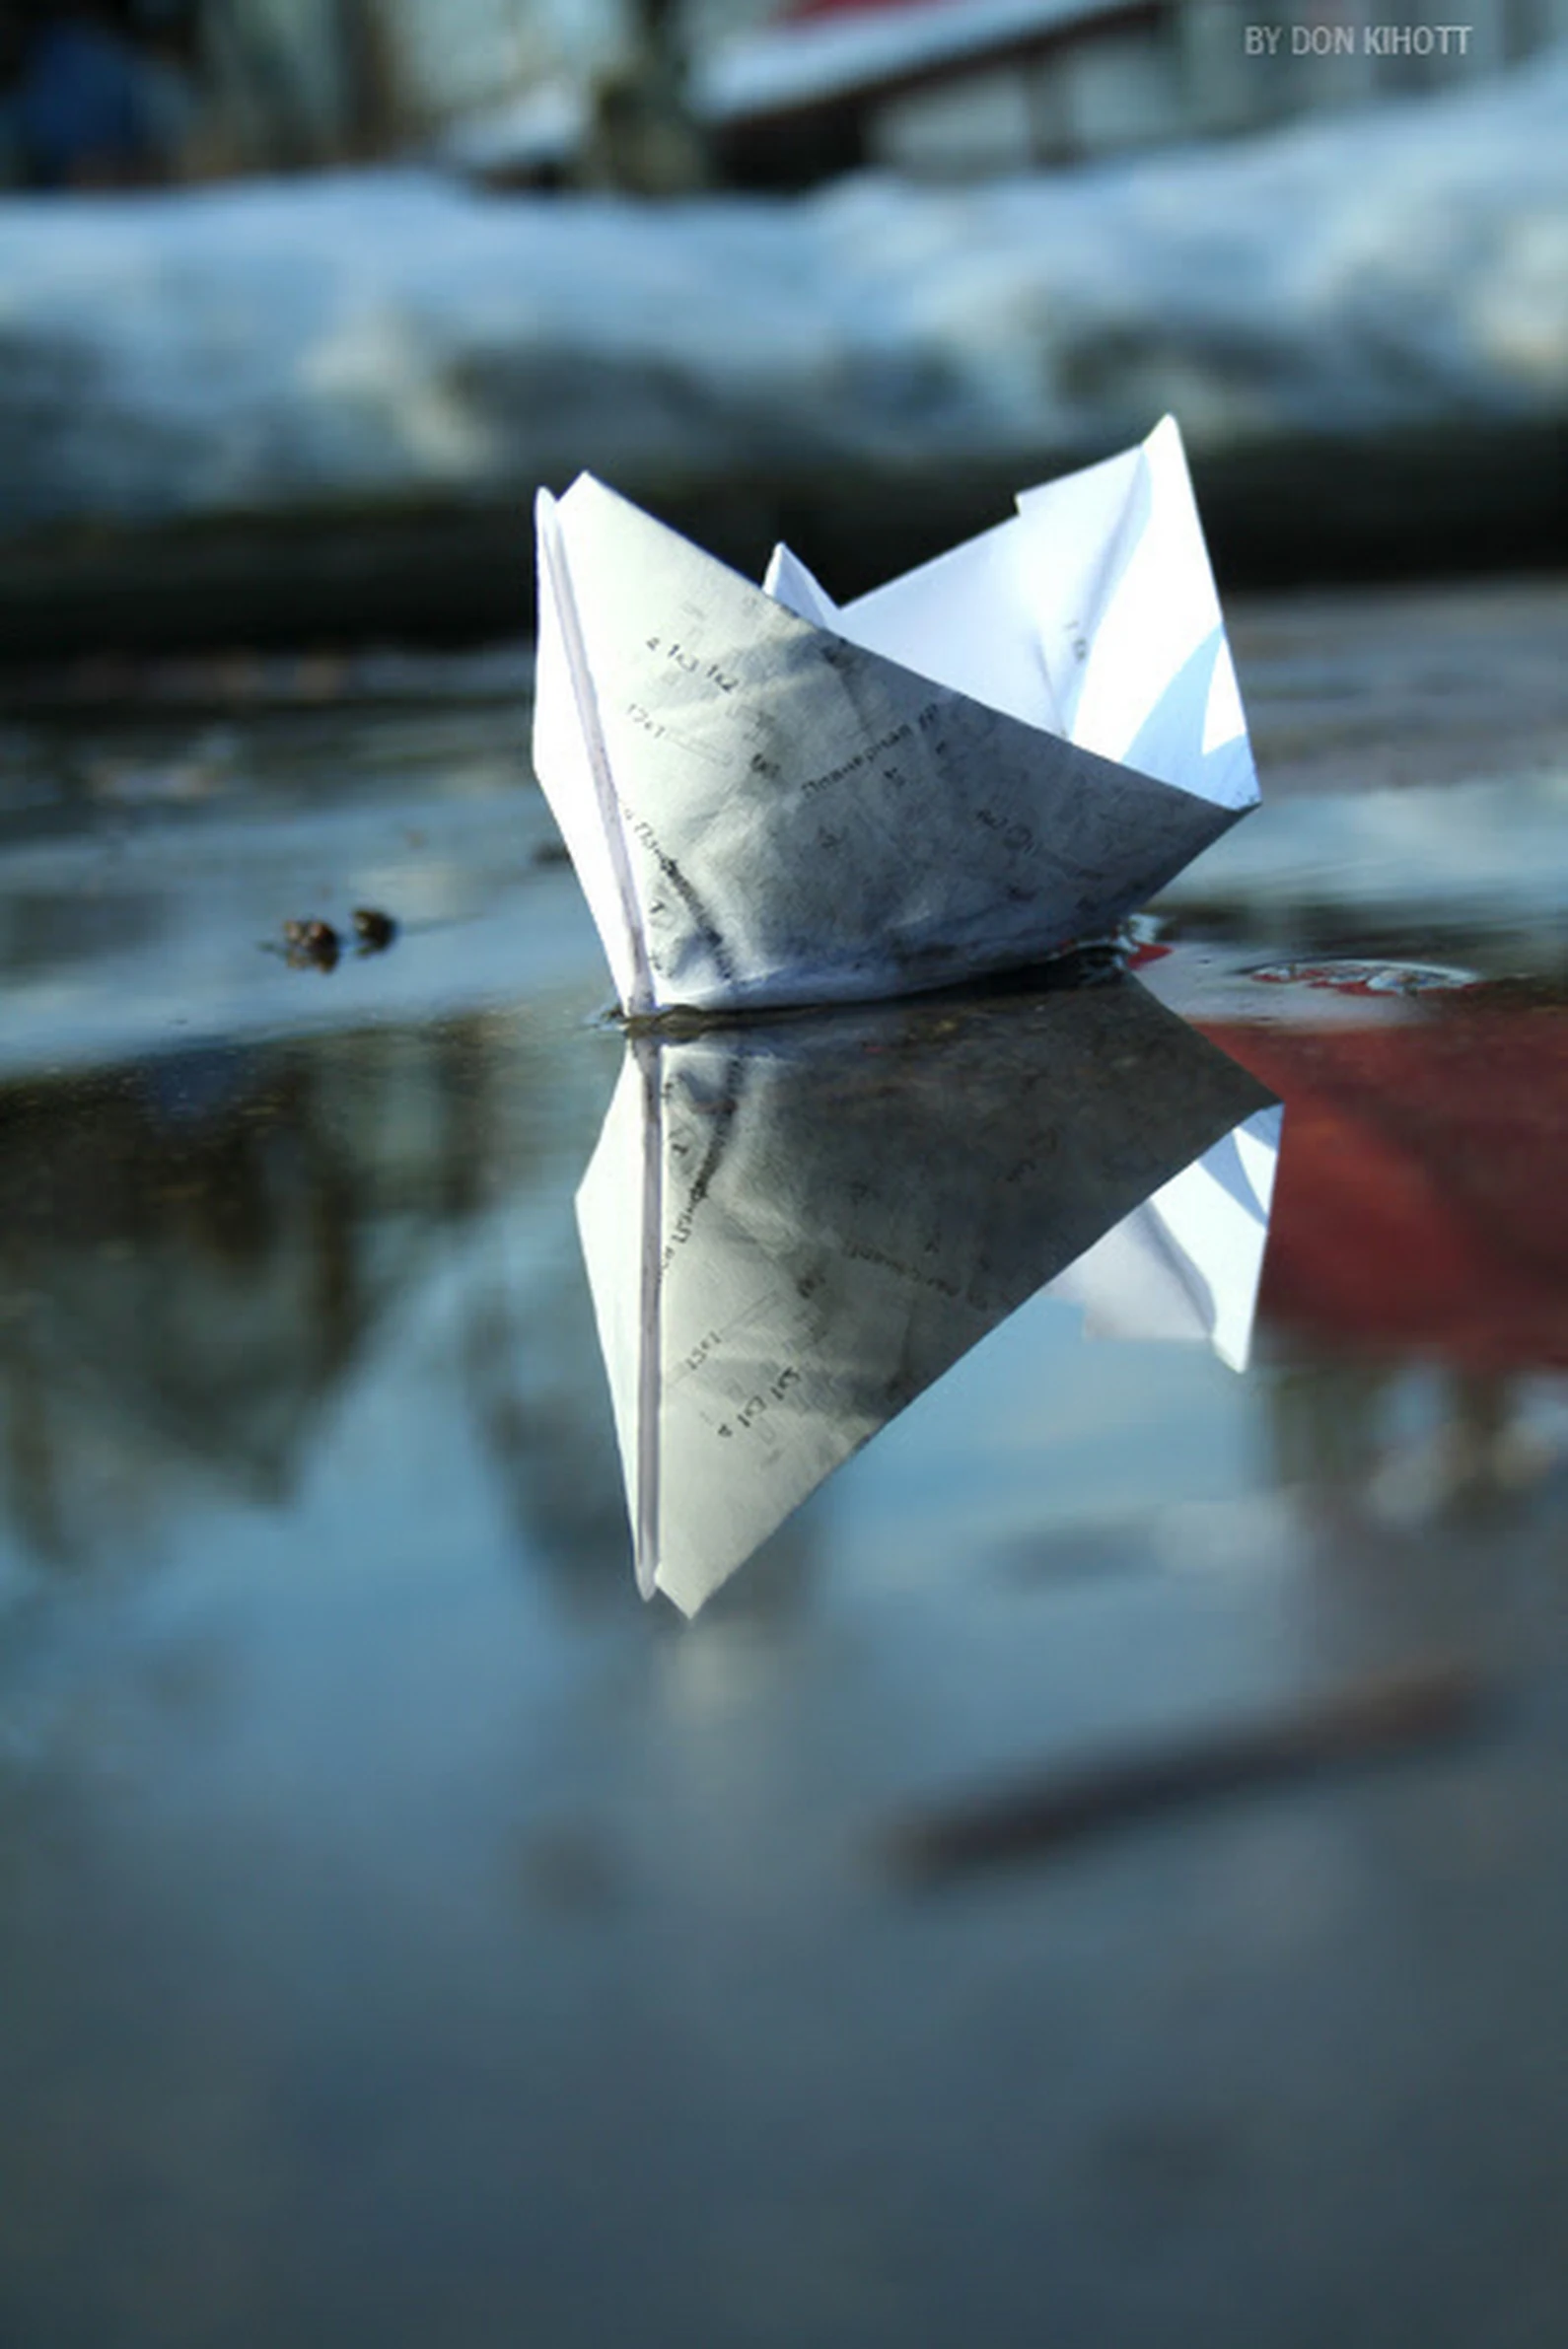 Кораблик из бумаги я по ручью пустил. Бумажный кораблик. Бумажный кораблик в ручье. Бумажный кораблик в луже.